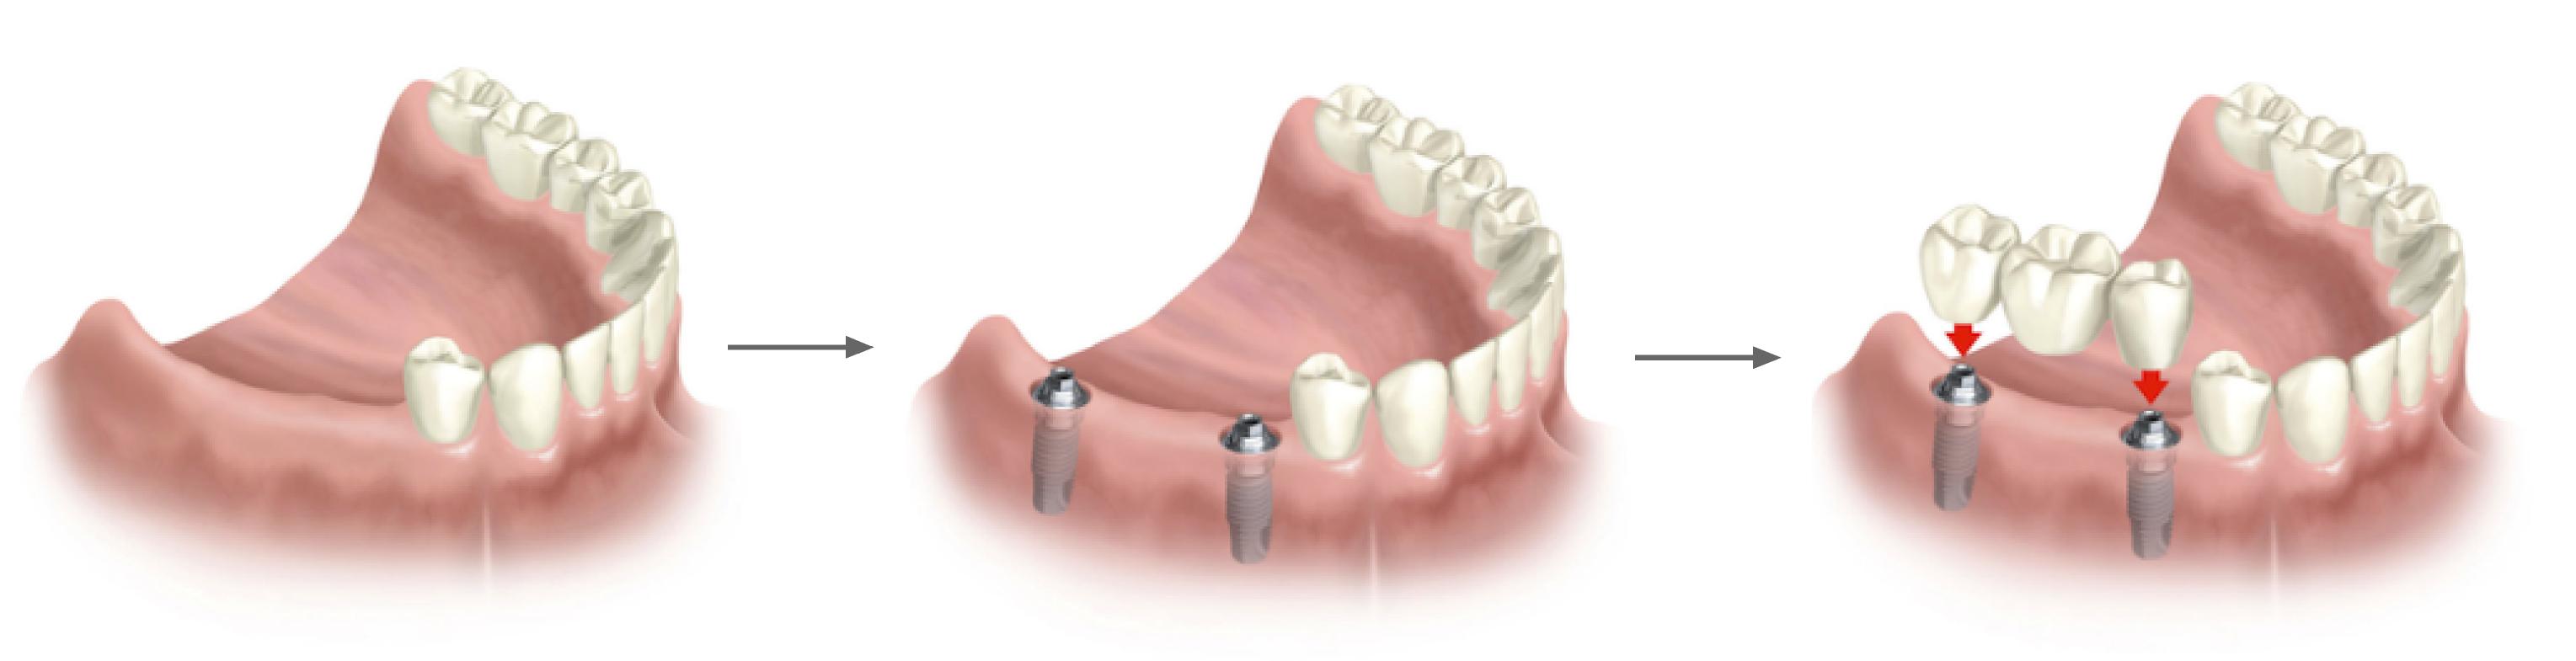 Clínica GO - Puente porcelana sobre implantes